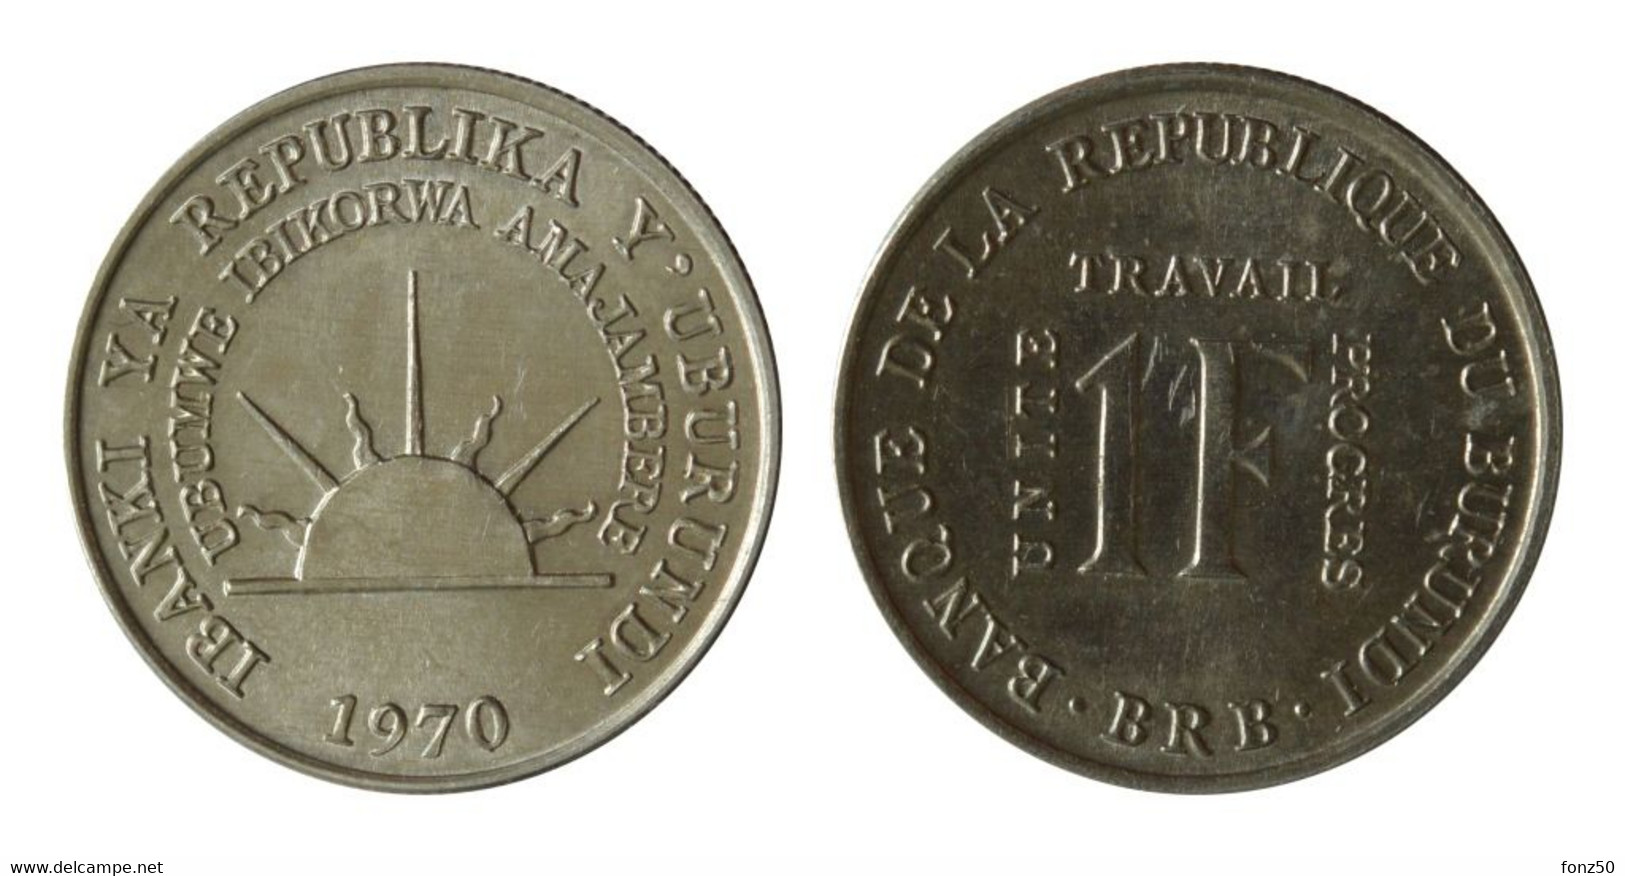 BURUNDI * 1 Francs 1970 * F D C * Nr 10607 - Burundi